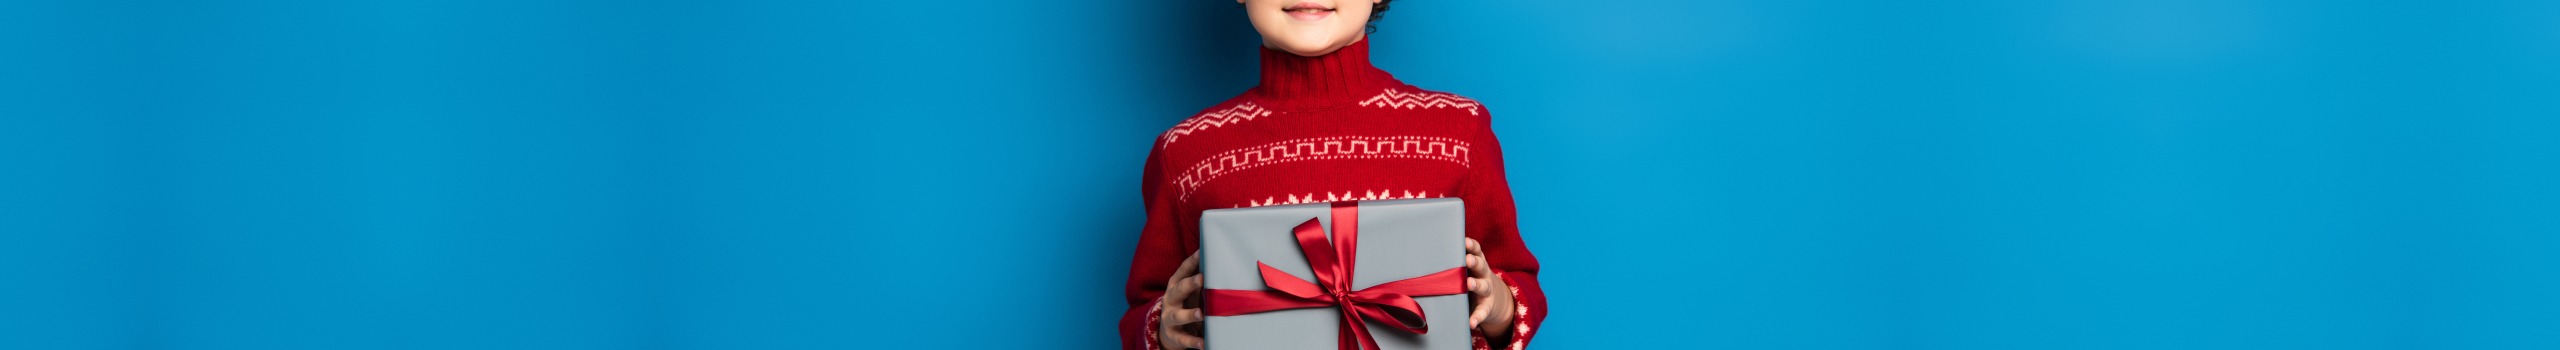 Ein Kind hält ein Geschenk